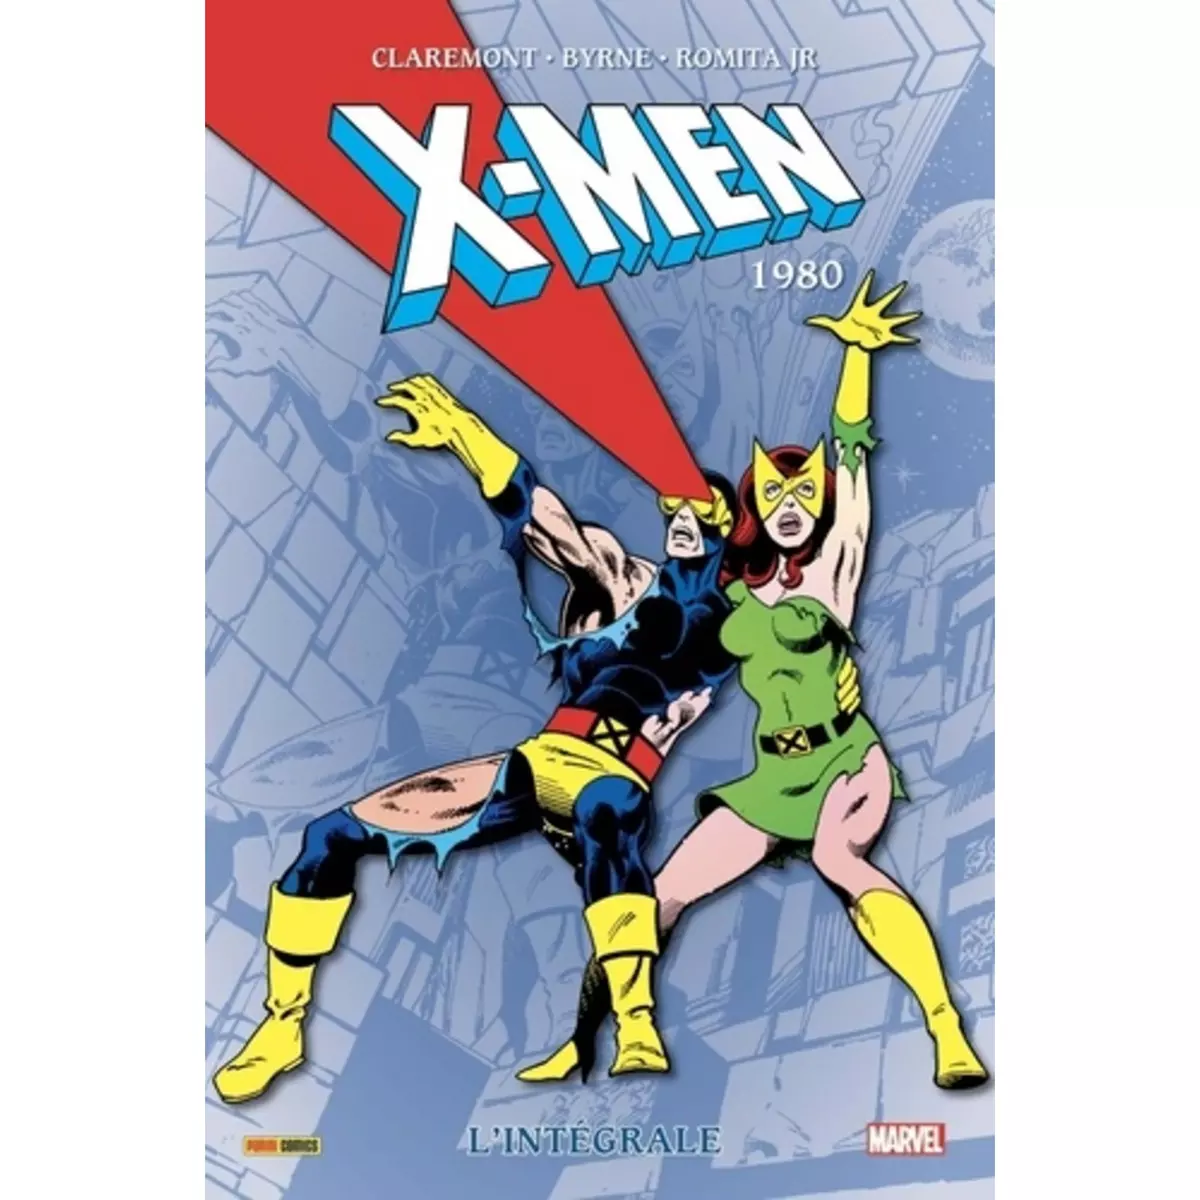  X-MEN L'INTEGRALE : 1980, Claremont Chris